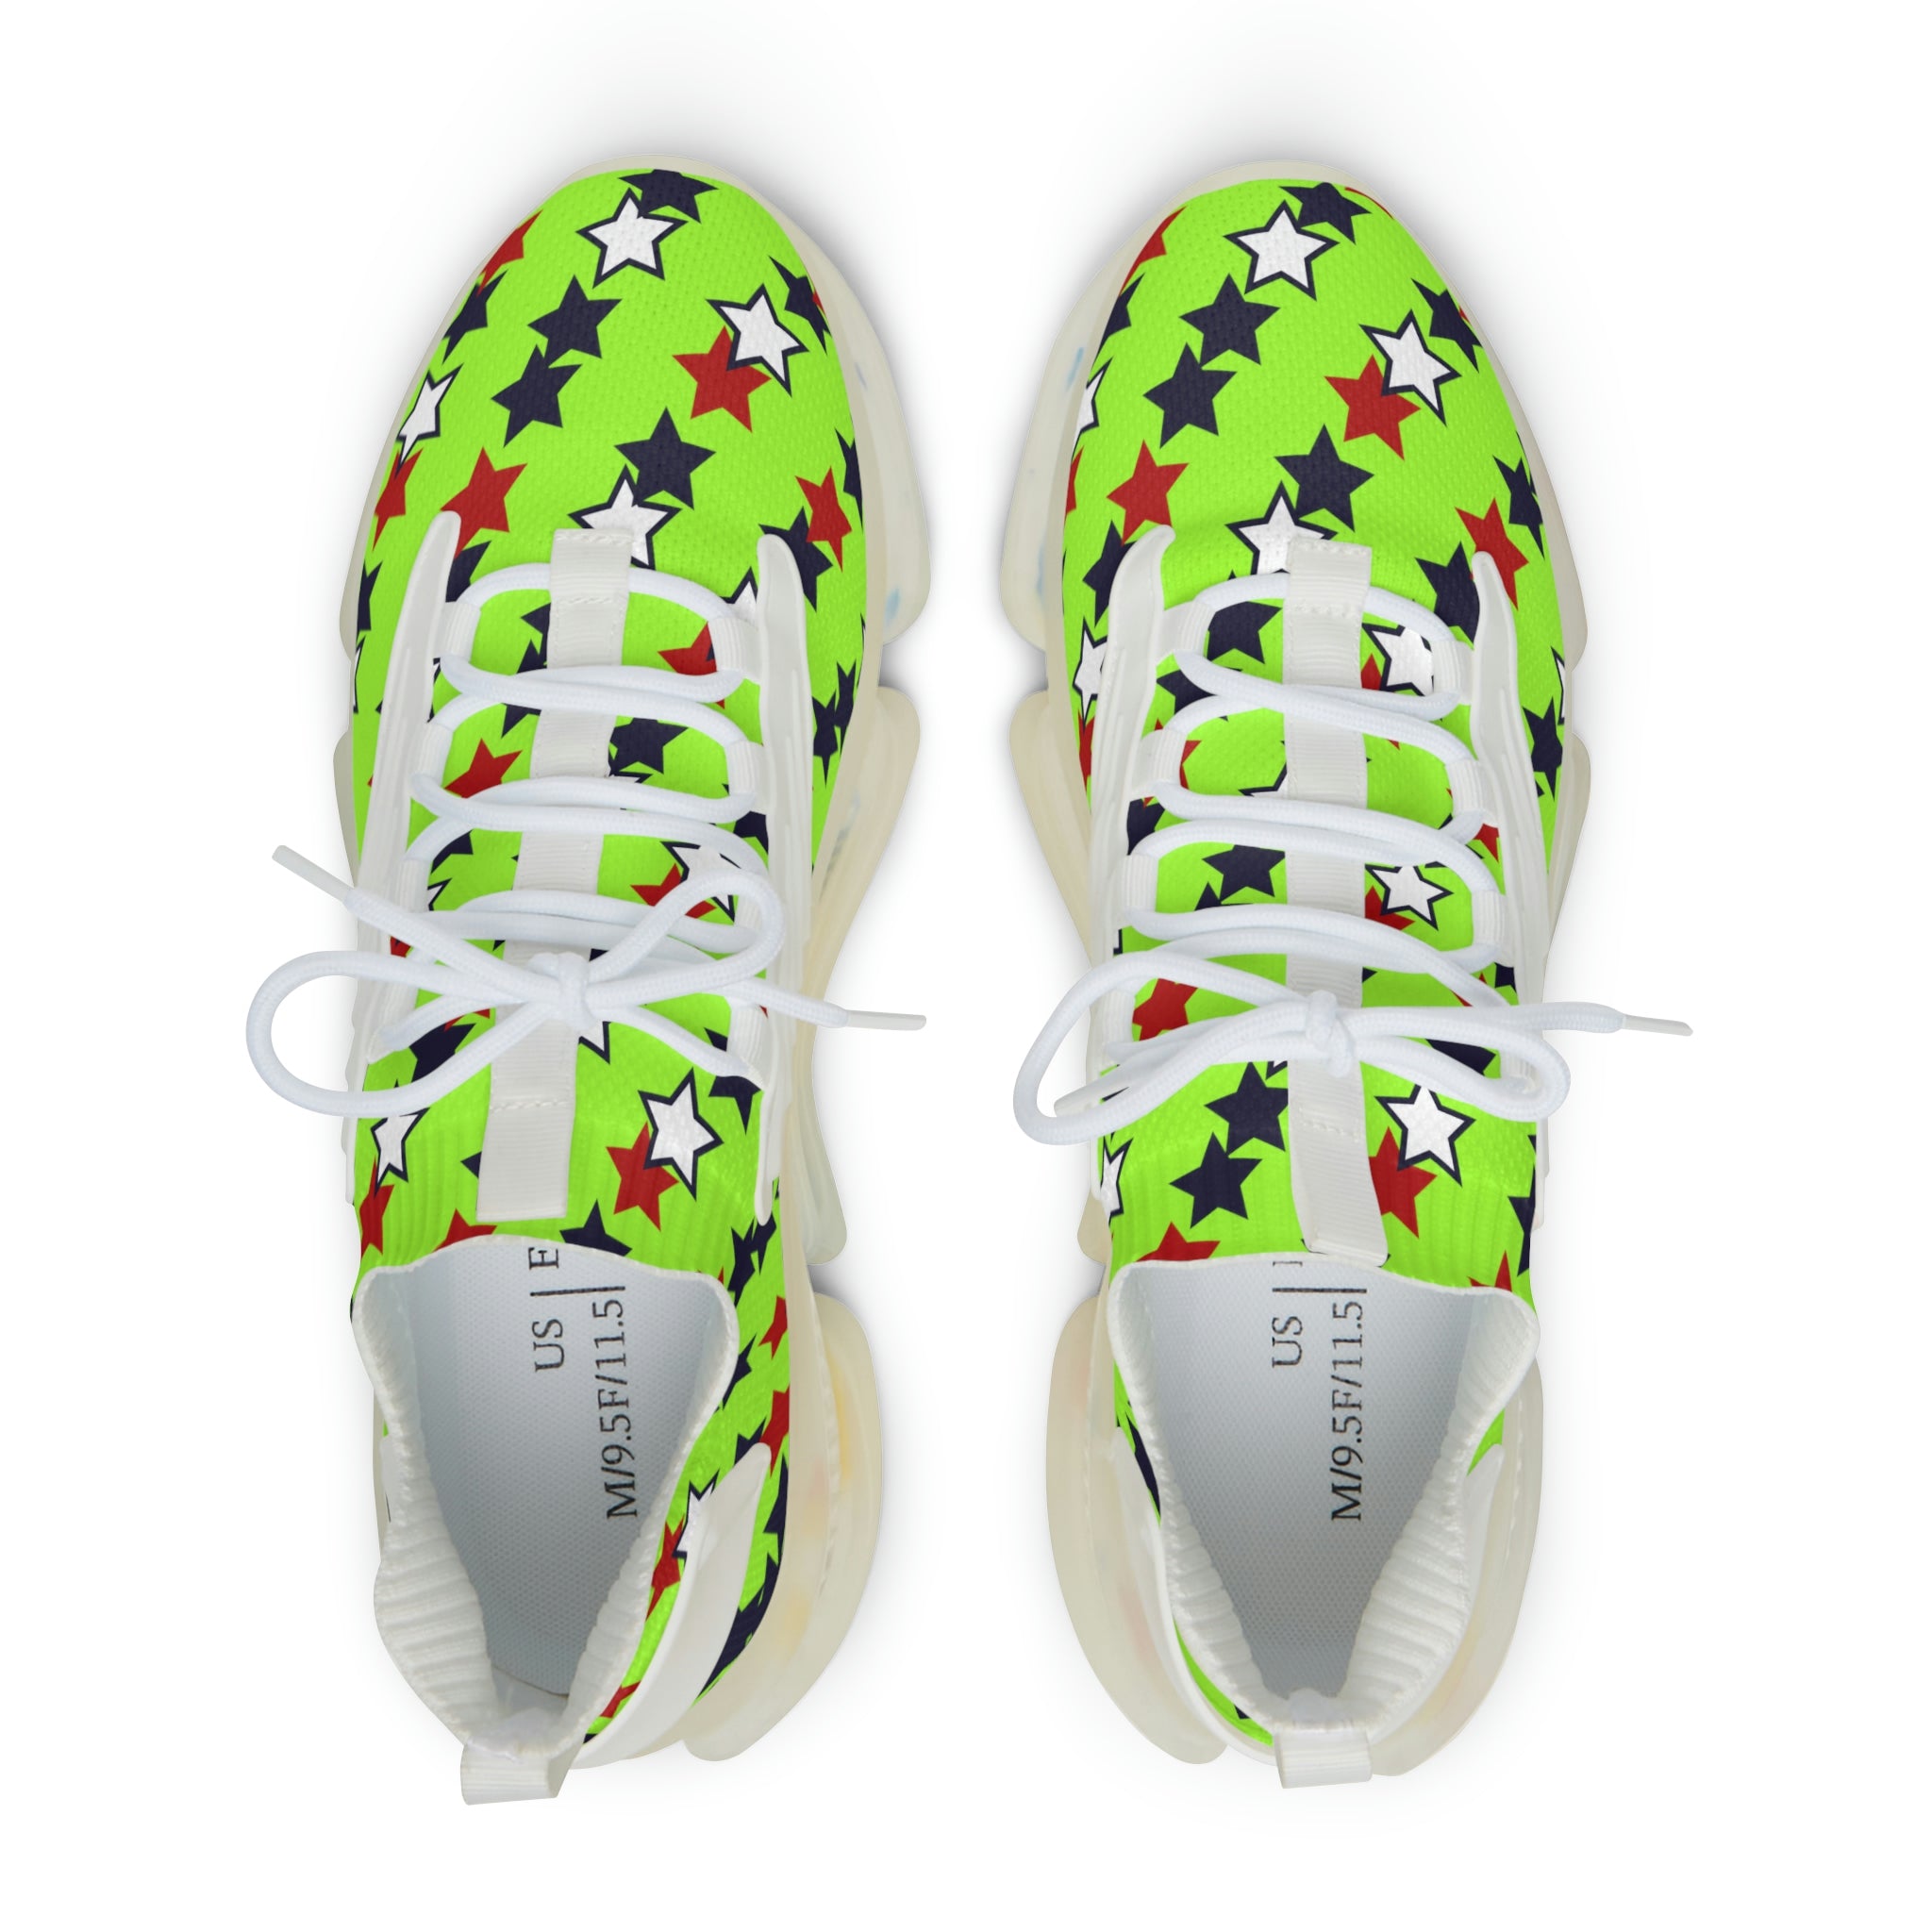 Lime Starboy OTT Men's Mesh Knit Sneakers